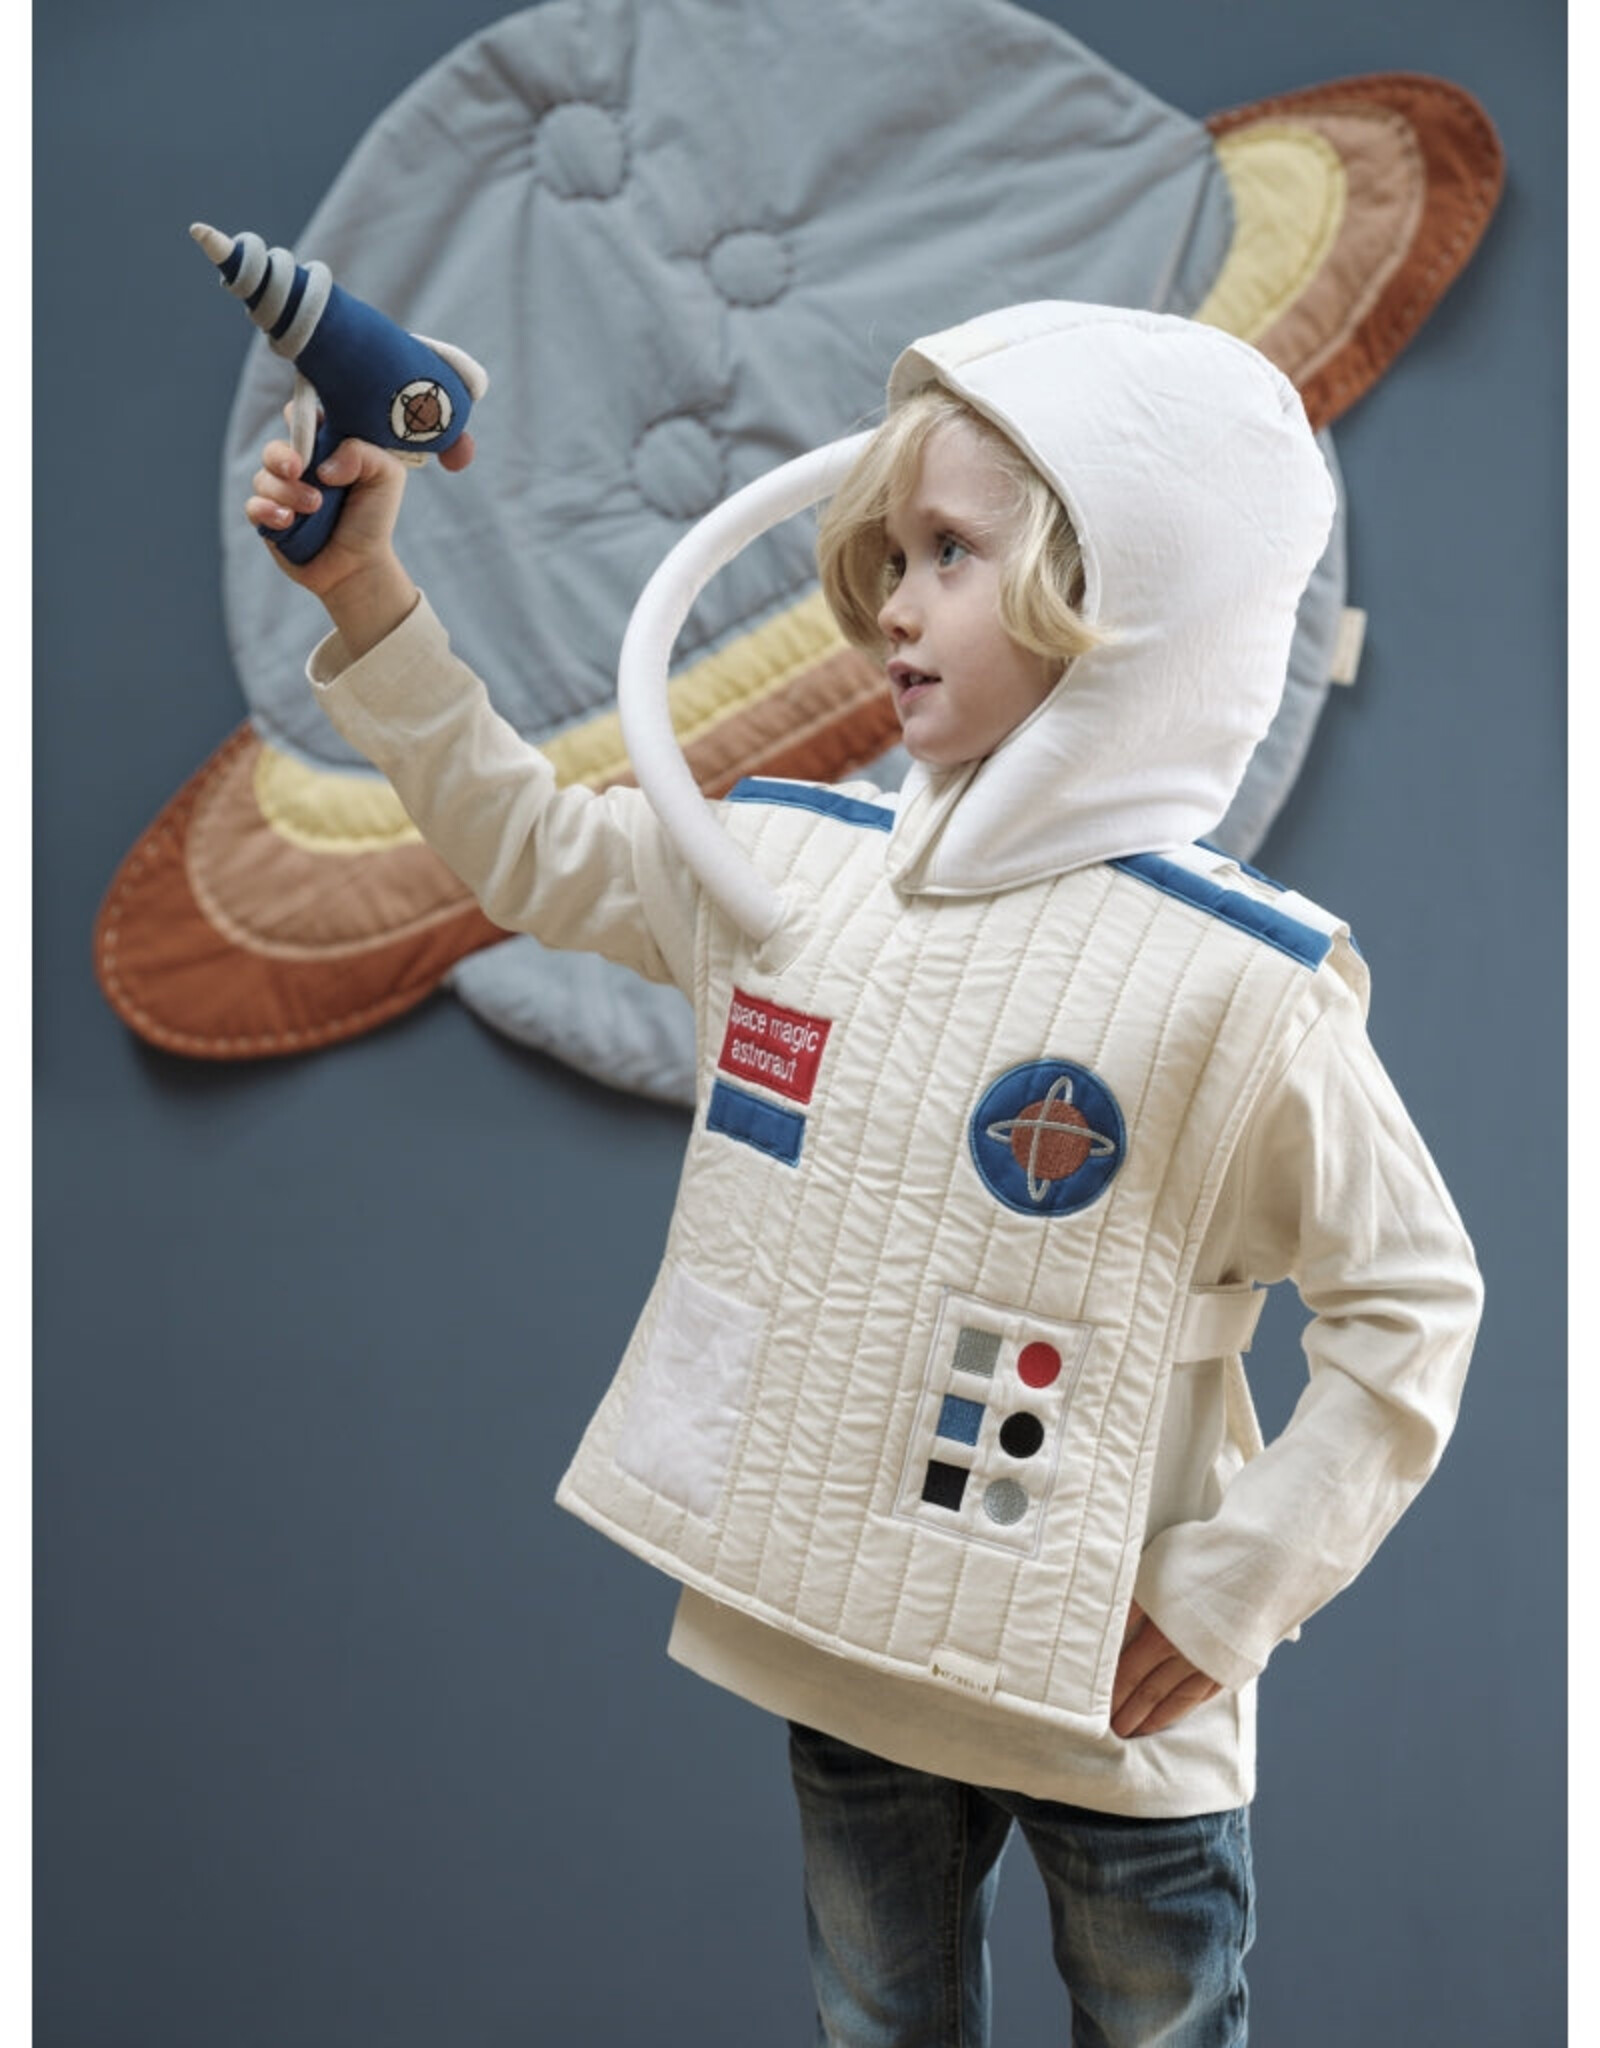 Fabelab Fabelab - Dress-up Little Astronaut Set